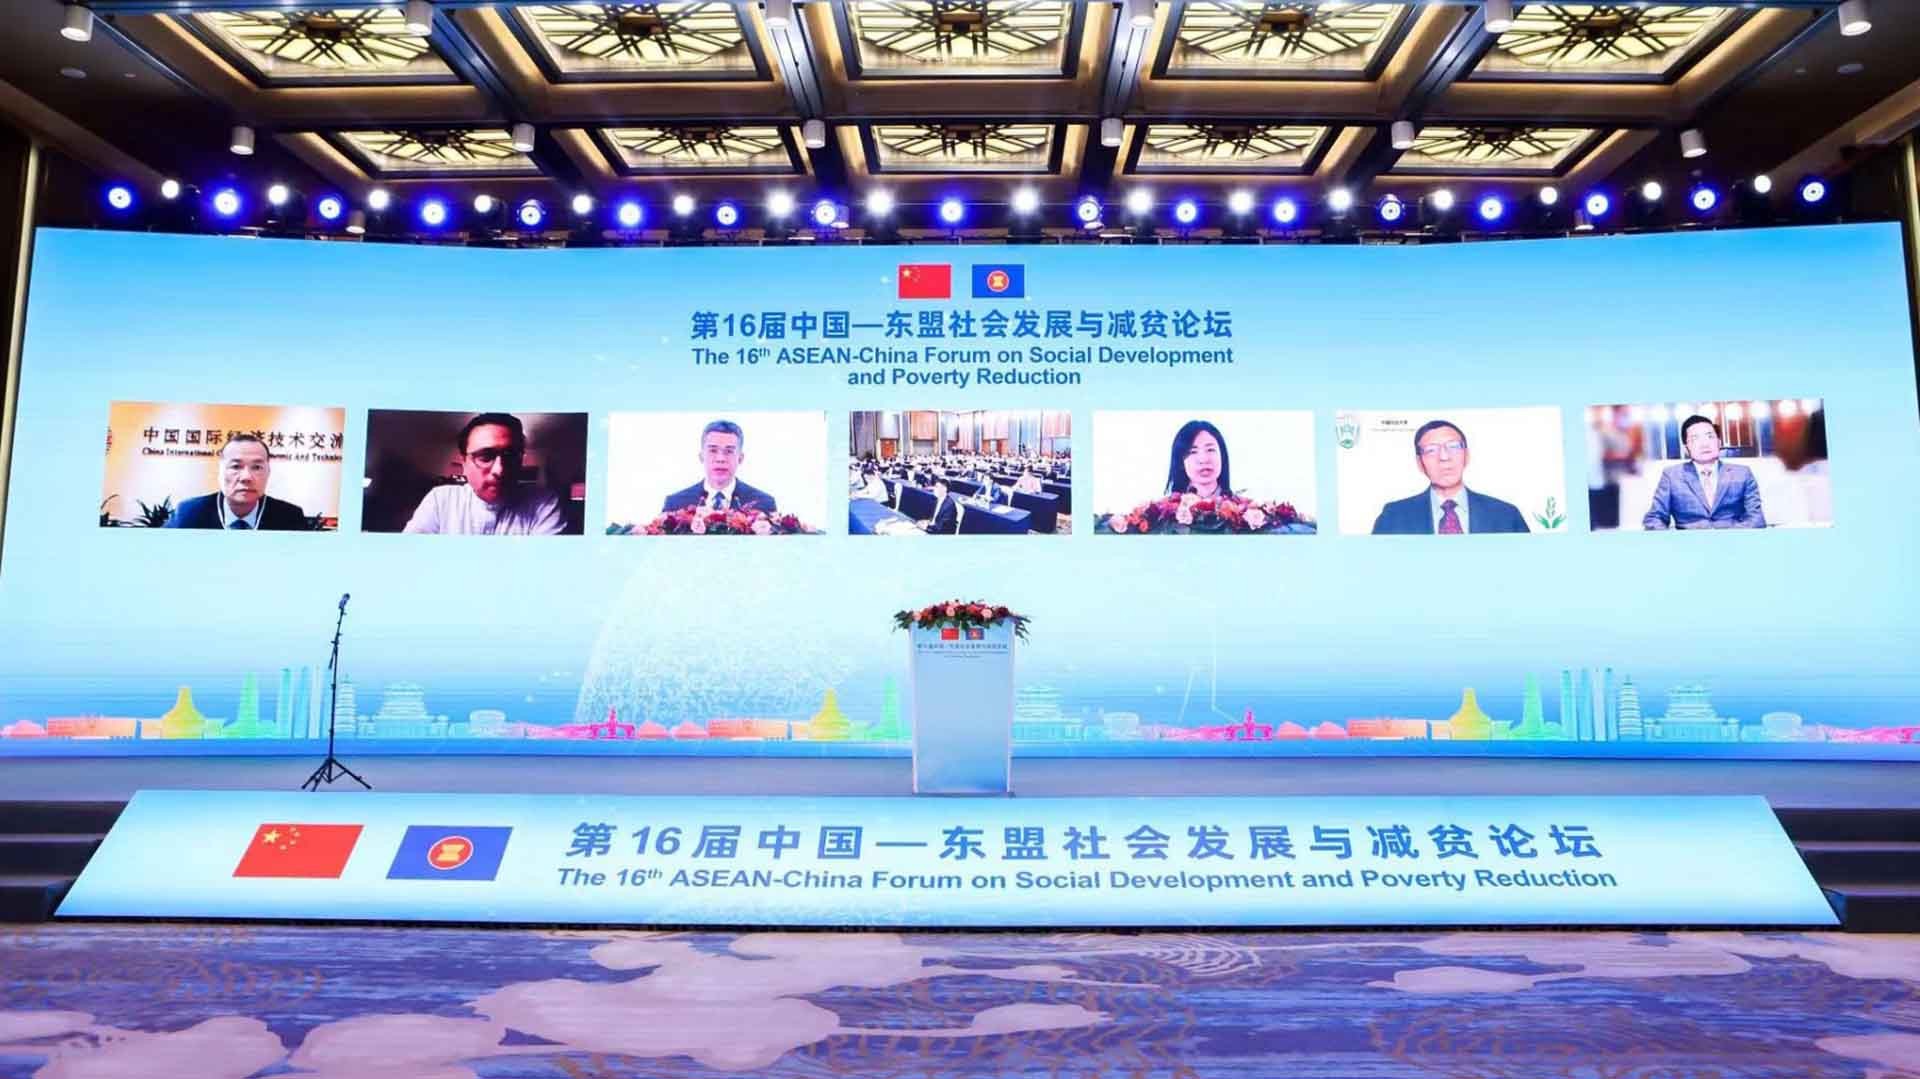 Diễn đàn ASEAN-Trung Quốc về phát triển xã hội và giảm nghèo lần thứ 16 đã khai mạc tại Nam Ninh, Trung Quốc.